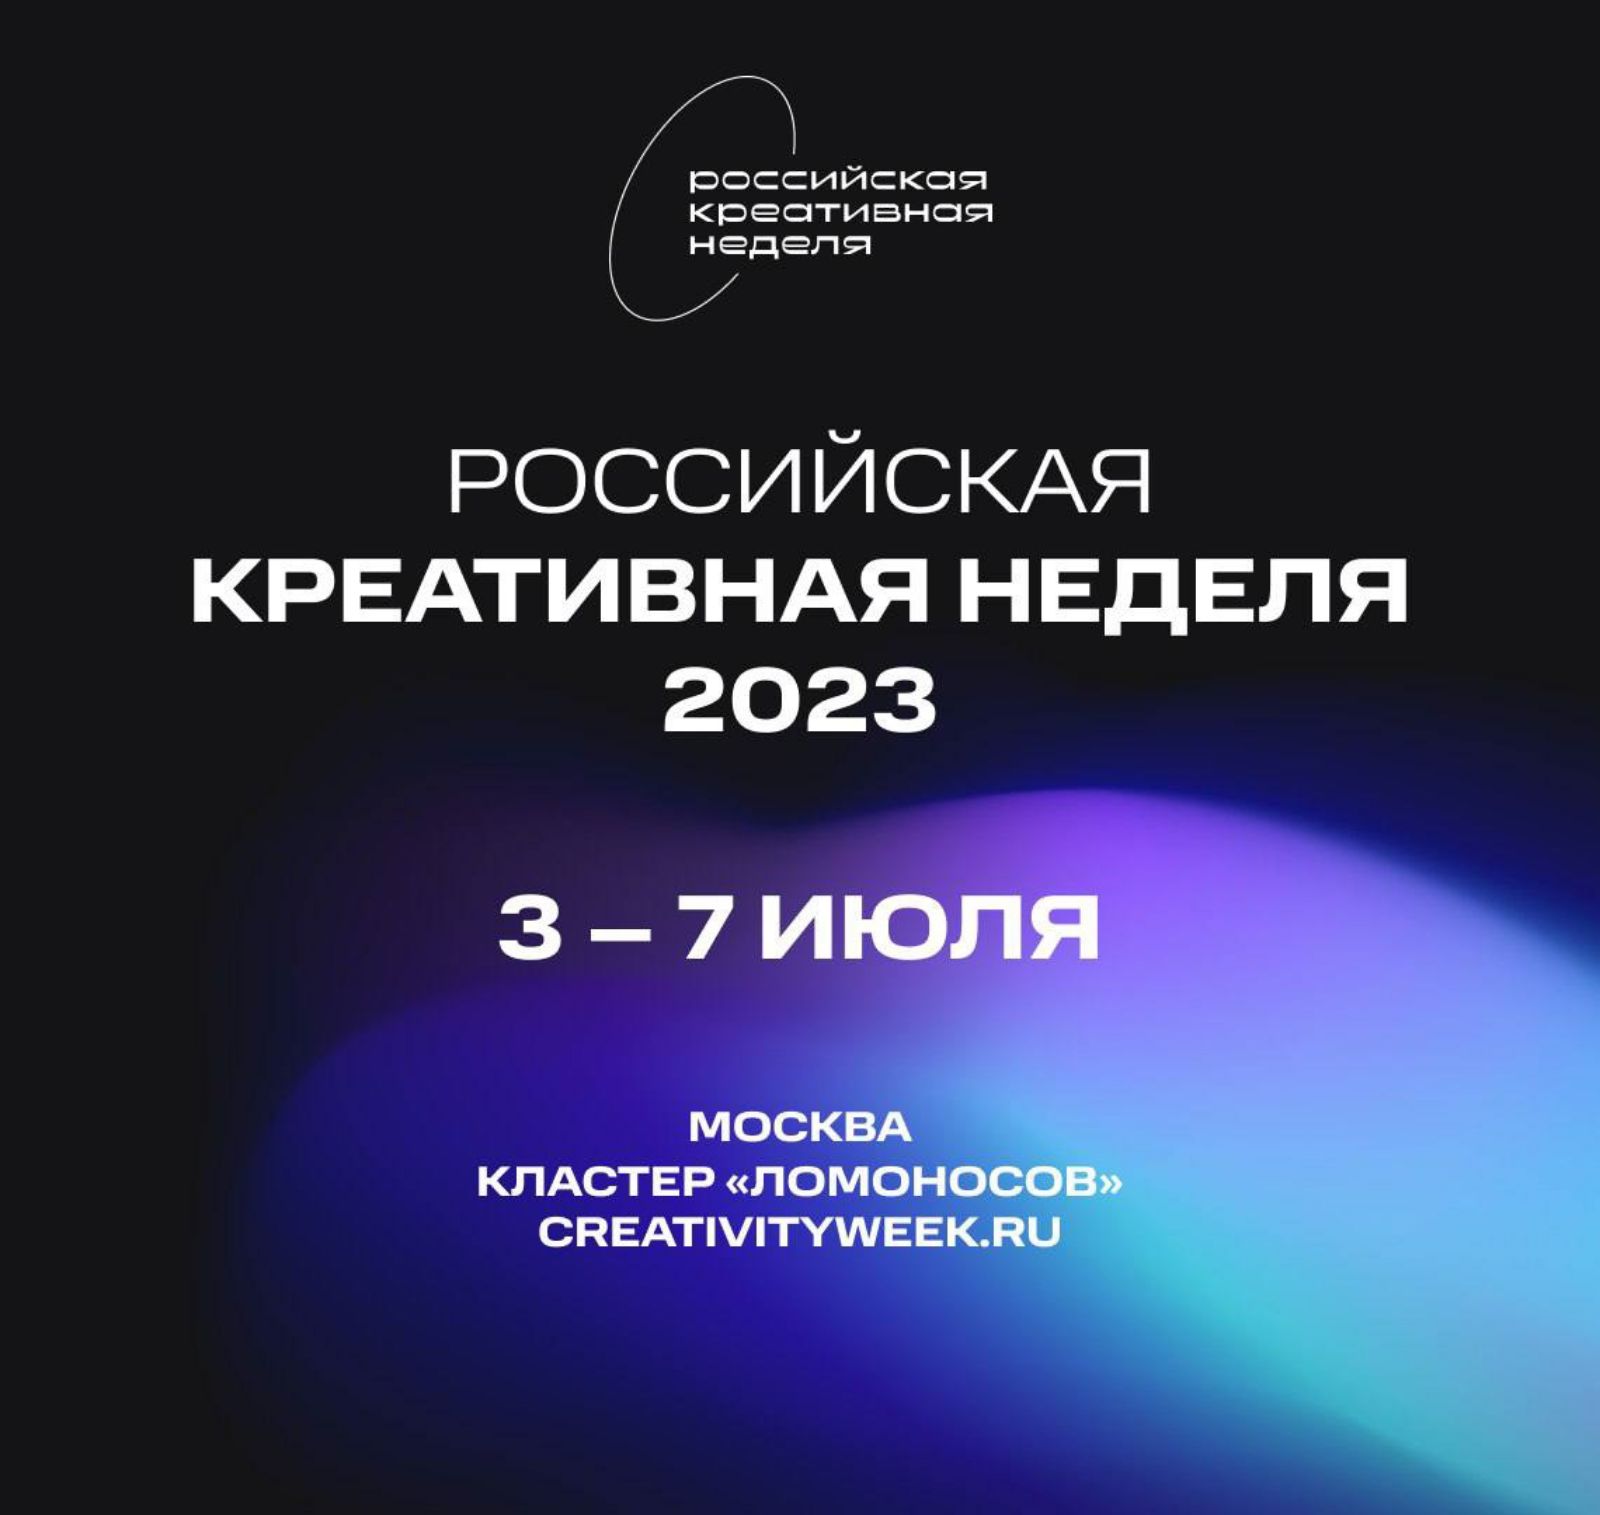 Журнал «Звукорежиссер» стал информационным партнером «Российской креативной недели», которая пройдет в Москве с 3 по 9 июля